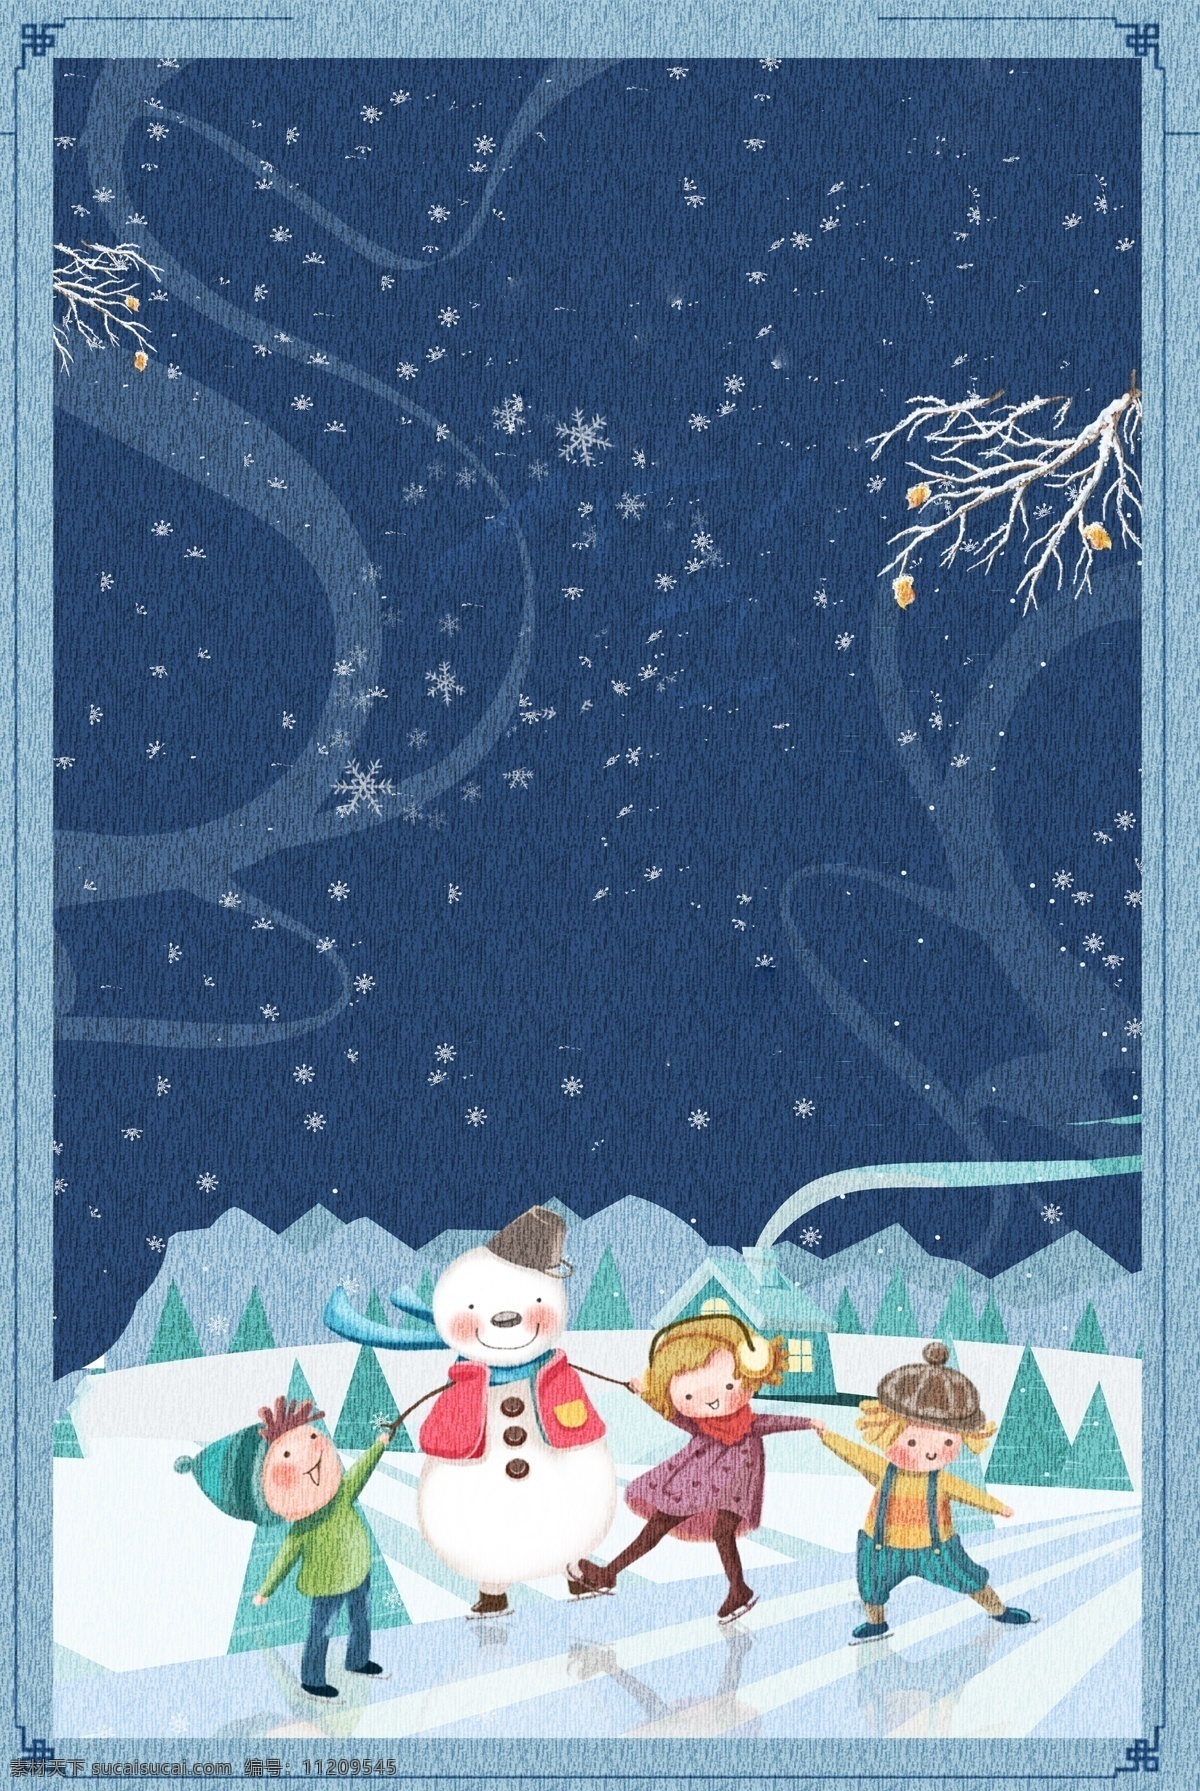 插 画风 月 你好 雪人 海报 插画风 12月你好 冬季 下雪 简约 卡通